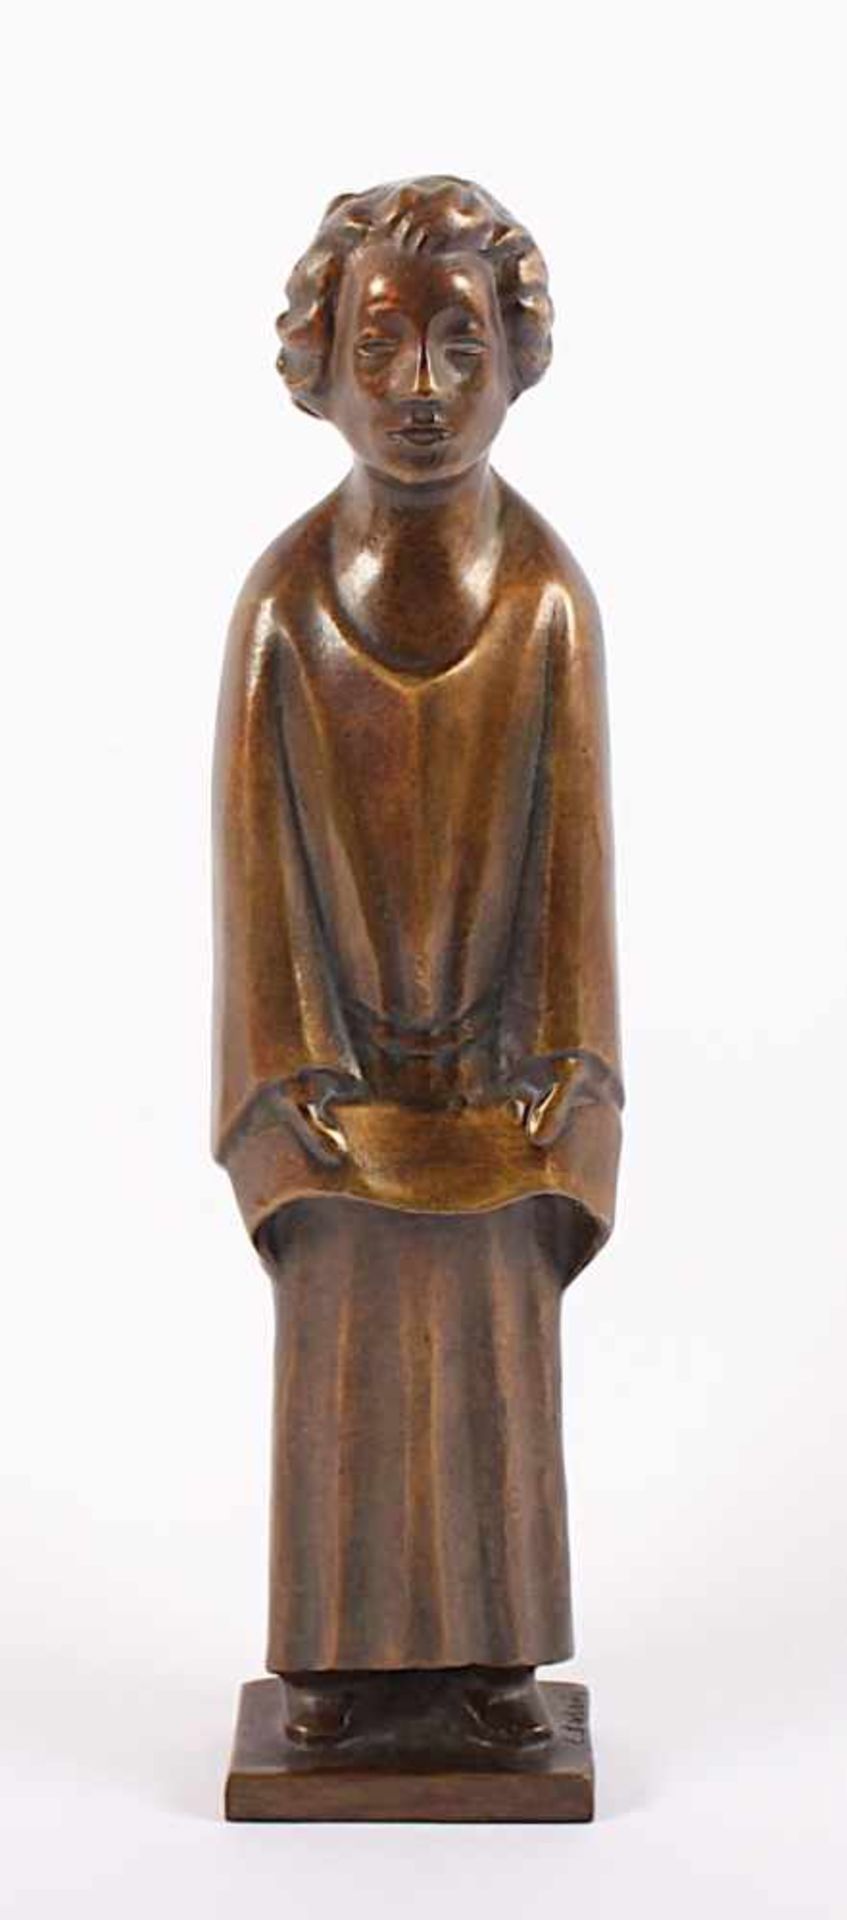 BARLACH, Ernst, "Engel", Bronze, H 32,5, seitlich nummeriert 471/980, Gießermarke Ars mundi,